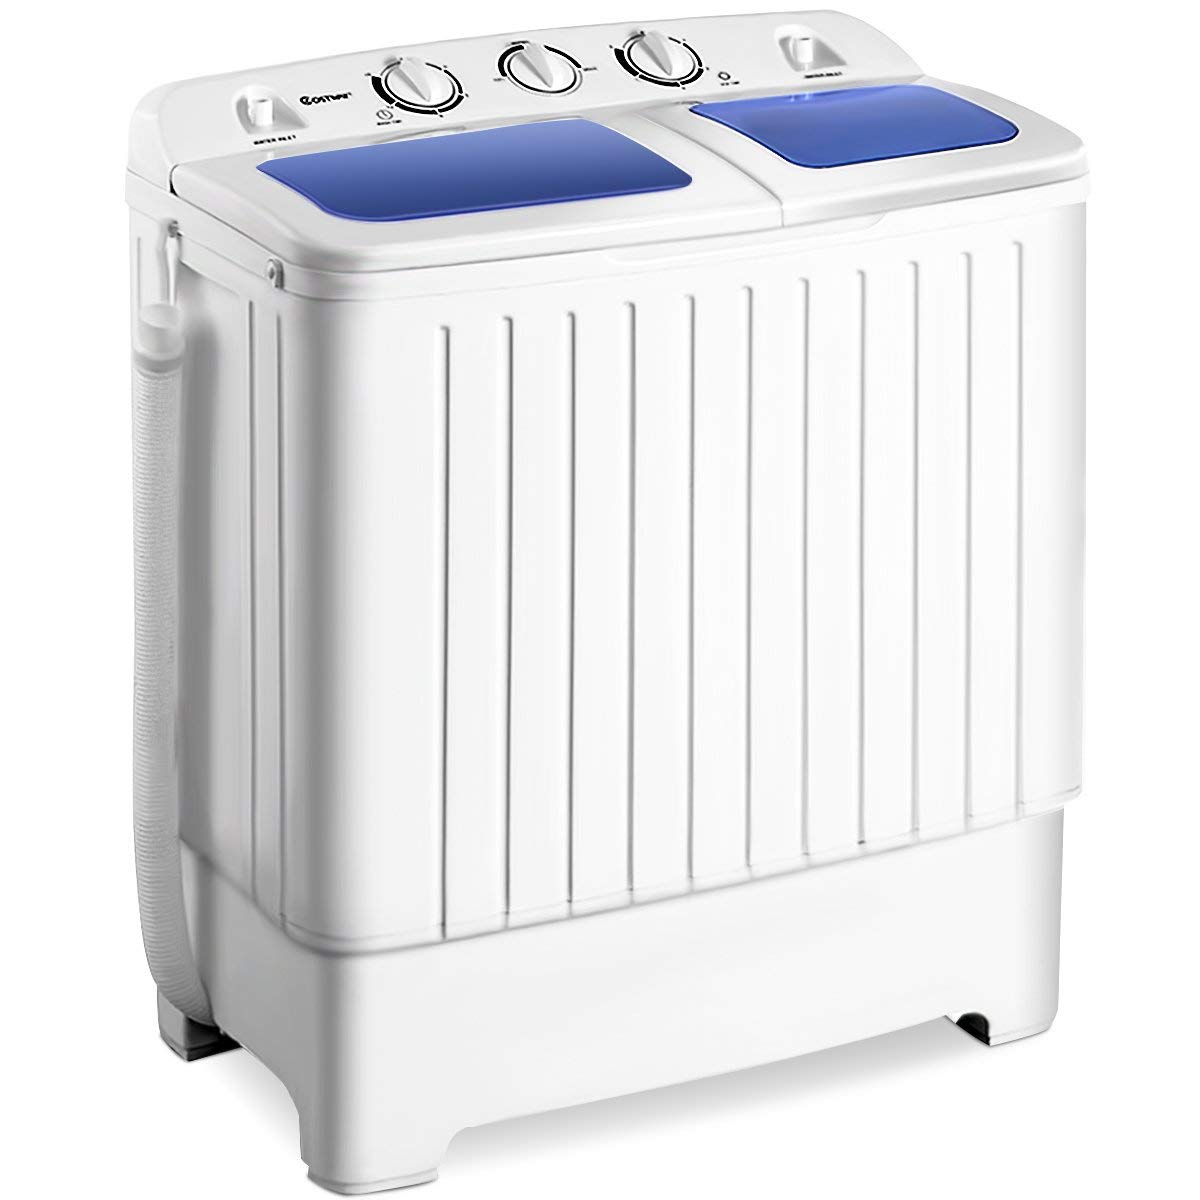 Giantex Portable Twin Tub Washing Machine.jpg